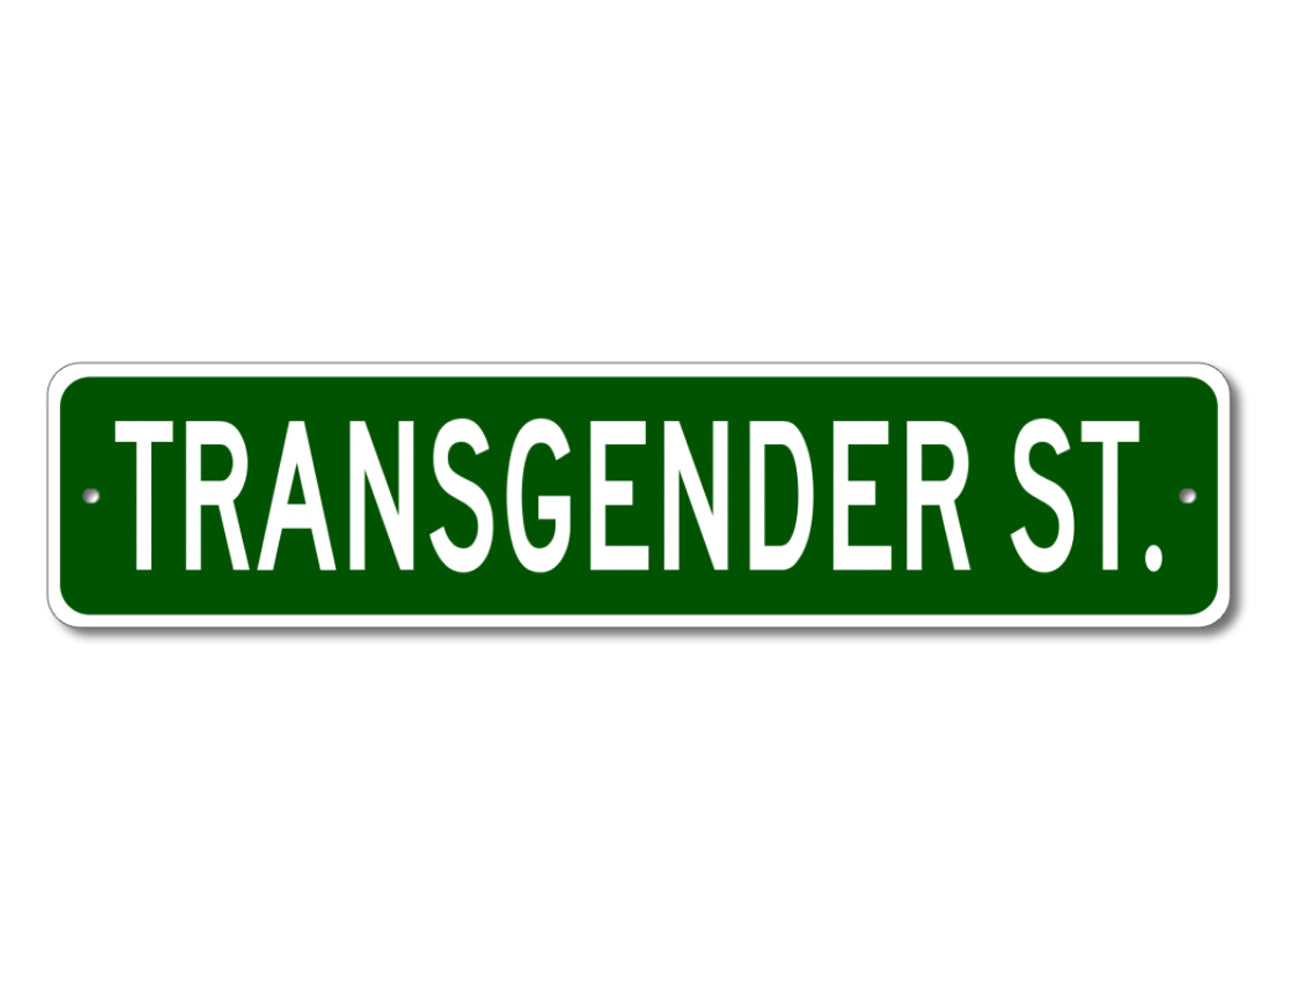 Left at London - Transgender St. Sign